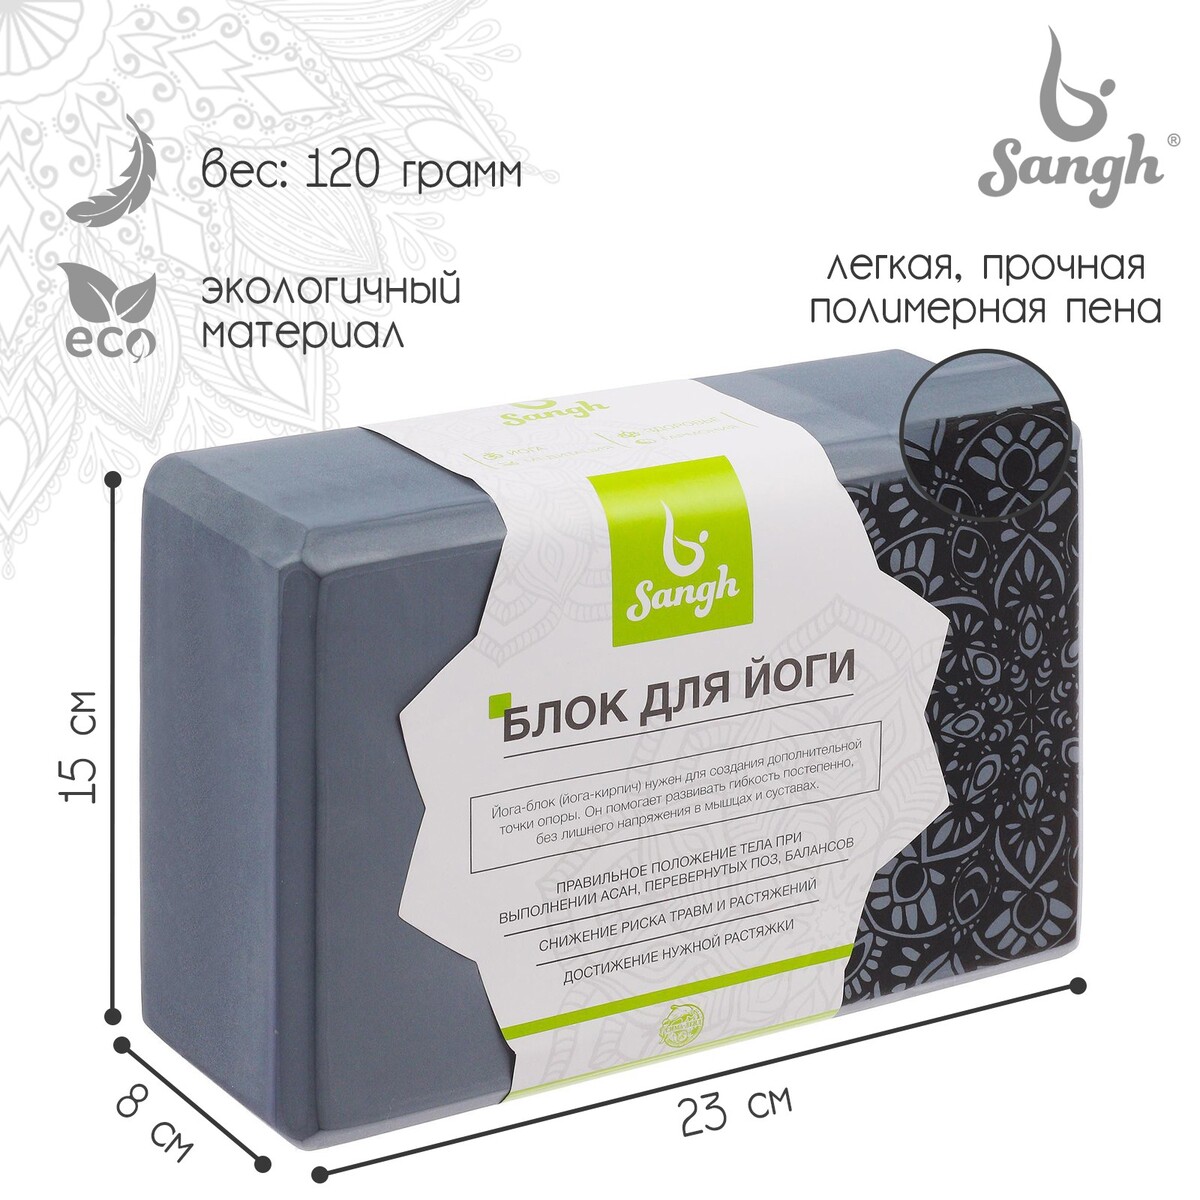 Блок для йоги sangh, 23×15×8 см, цвет серый блок для йоги airex eco cork block aa yogaecocb